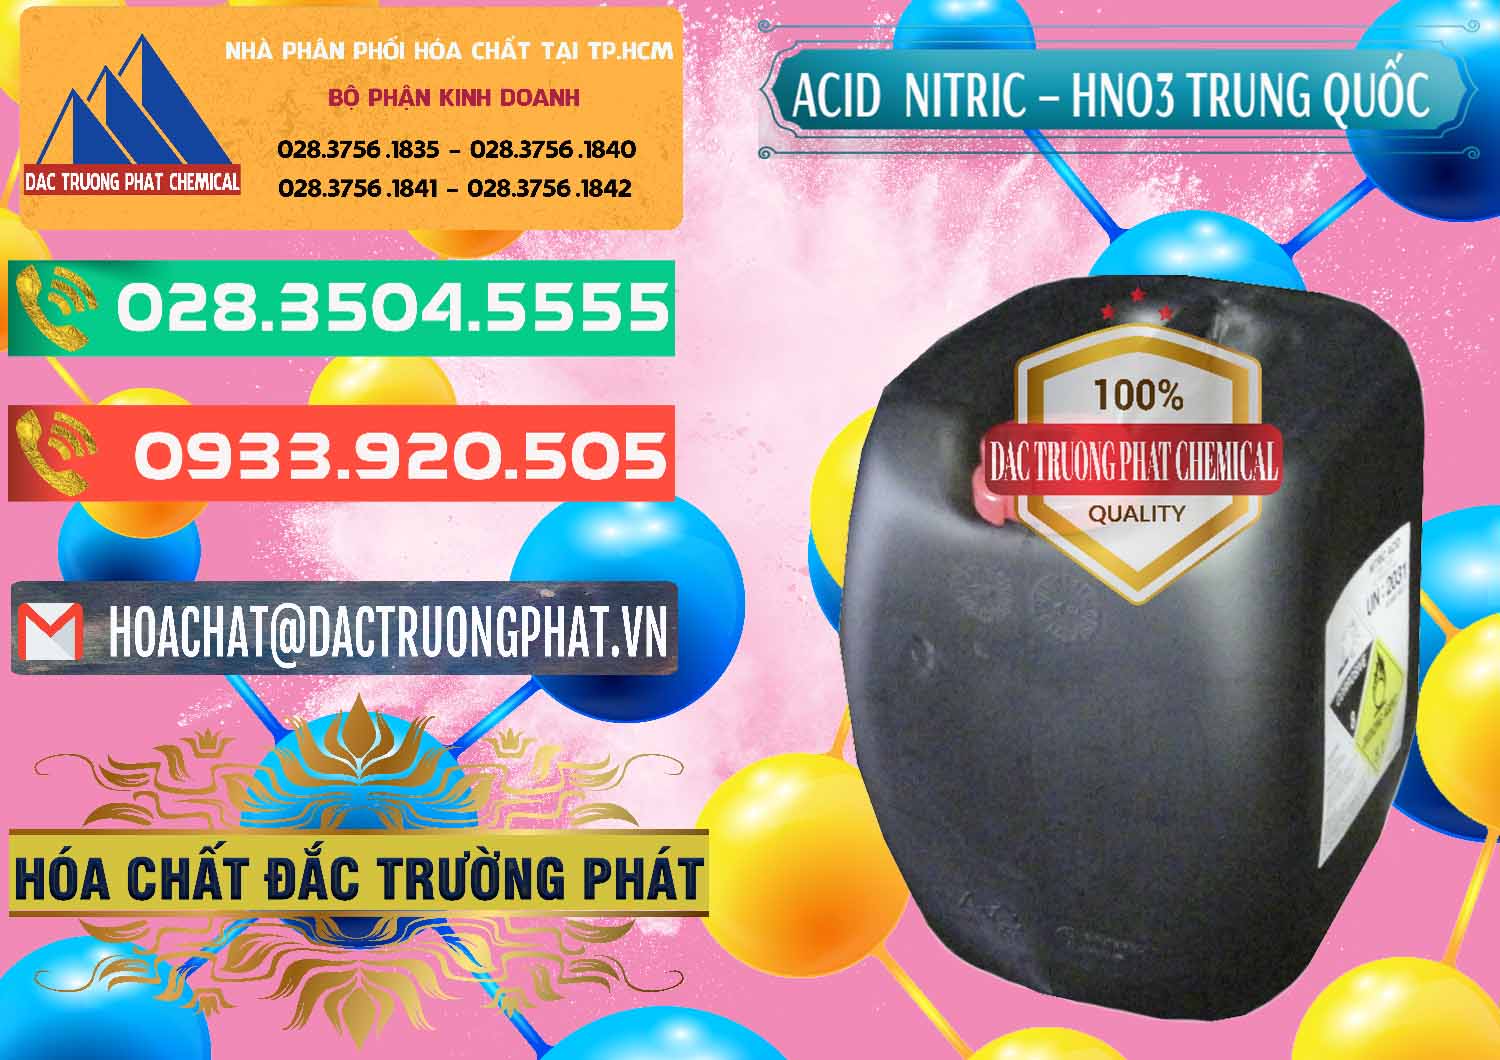 Nơi chuyên bán _ phân phối Acid Nitric – Axit Nitric HNO3 68% Trung Quốc China - 0343 - Nơi bán - cung cấp hóa chất tại TP.HCM - congtyhoachat.com.vn